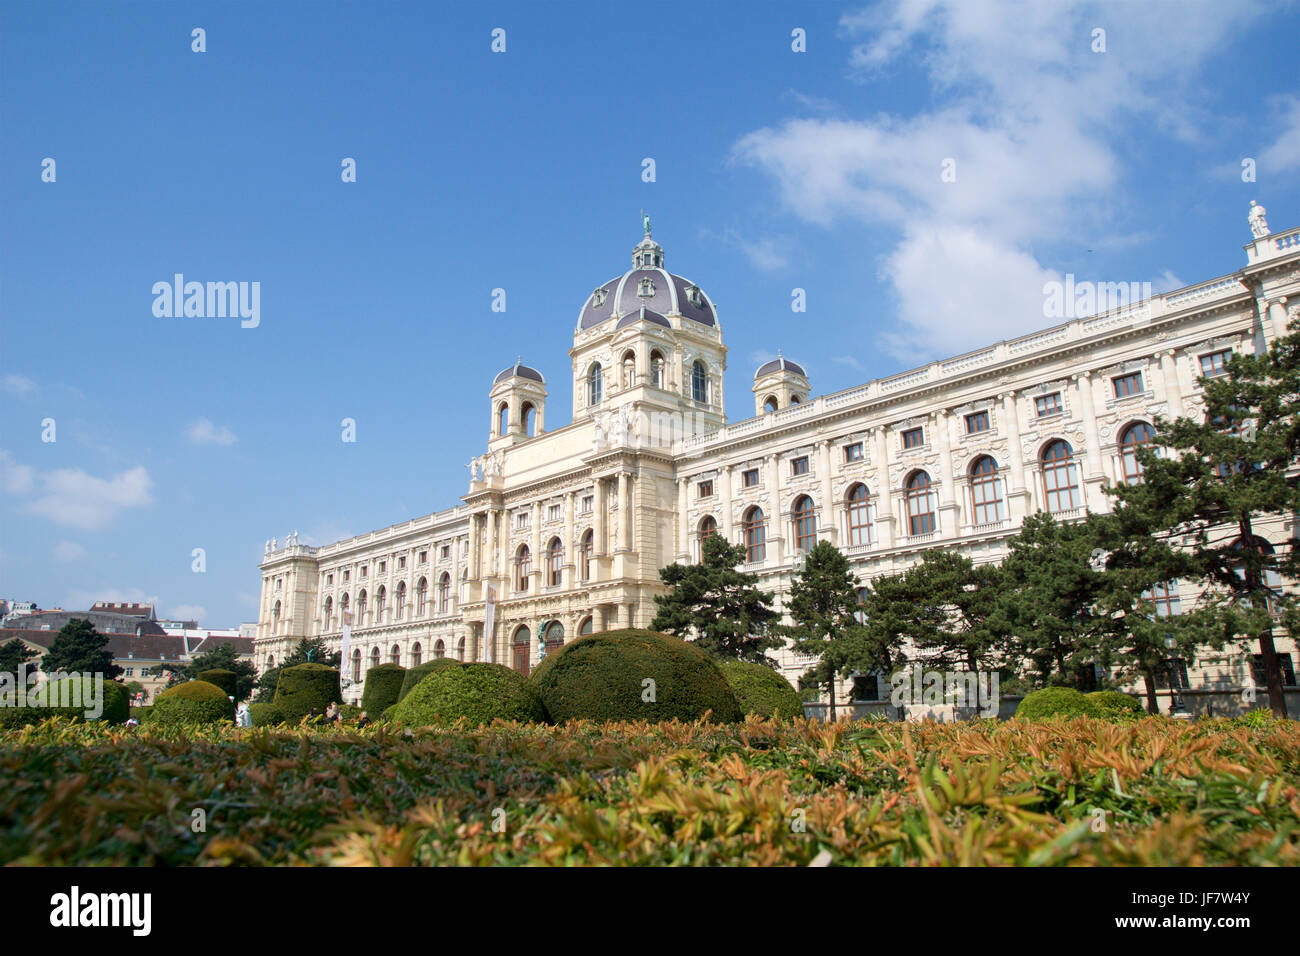 VIENNA, Austria - Aprile 29th, 2017: la splendida vista del famoso Naturhistorisches Museum Il Museo di Storia Naturale con il parco e la scultura, come si vede dal Maria-Theresien-Platz Foto Stock